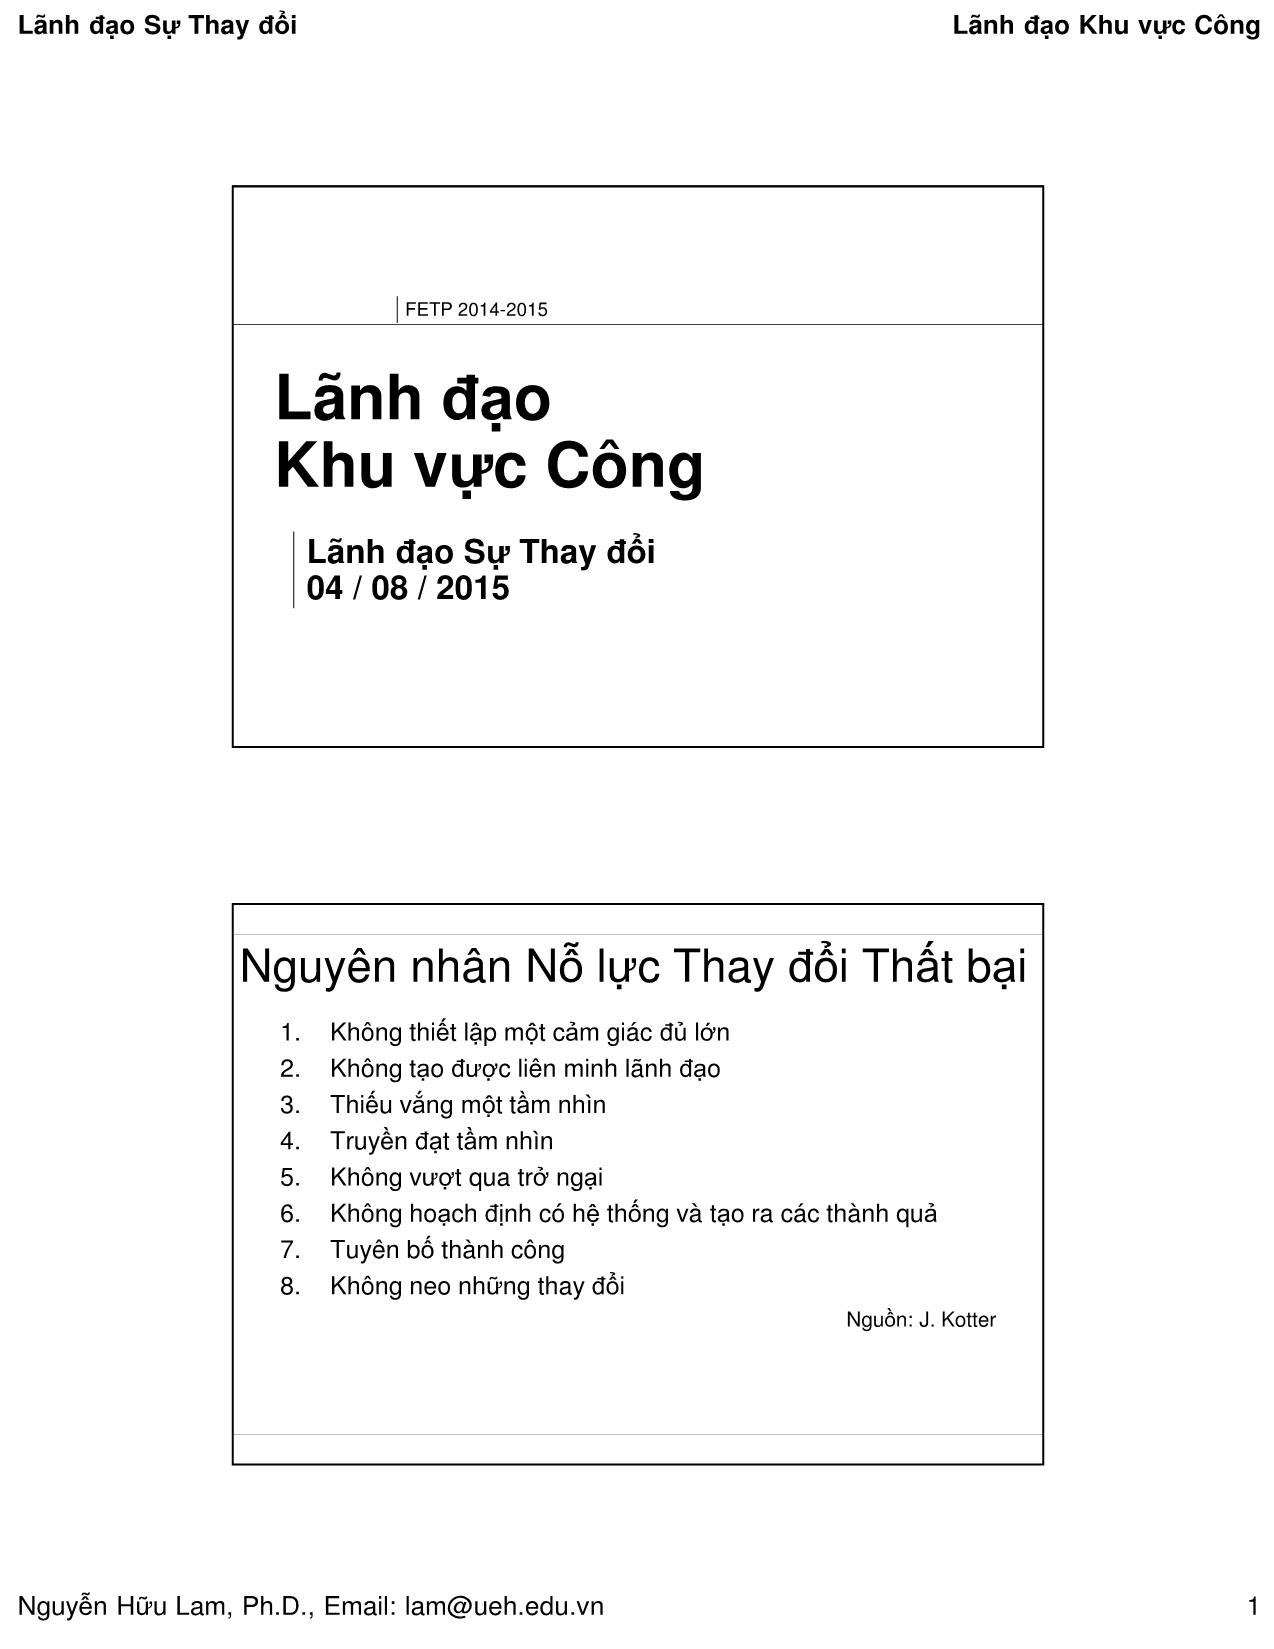 Bài giảng Quản lý công - Lãnh đạo sự thay đổi - Nguyễn Hữu Lam trang 1